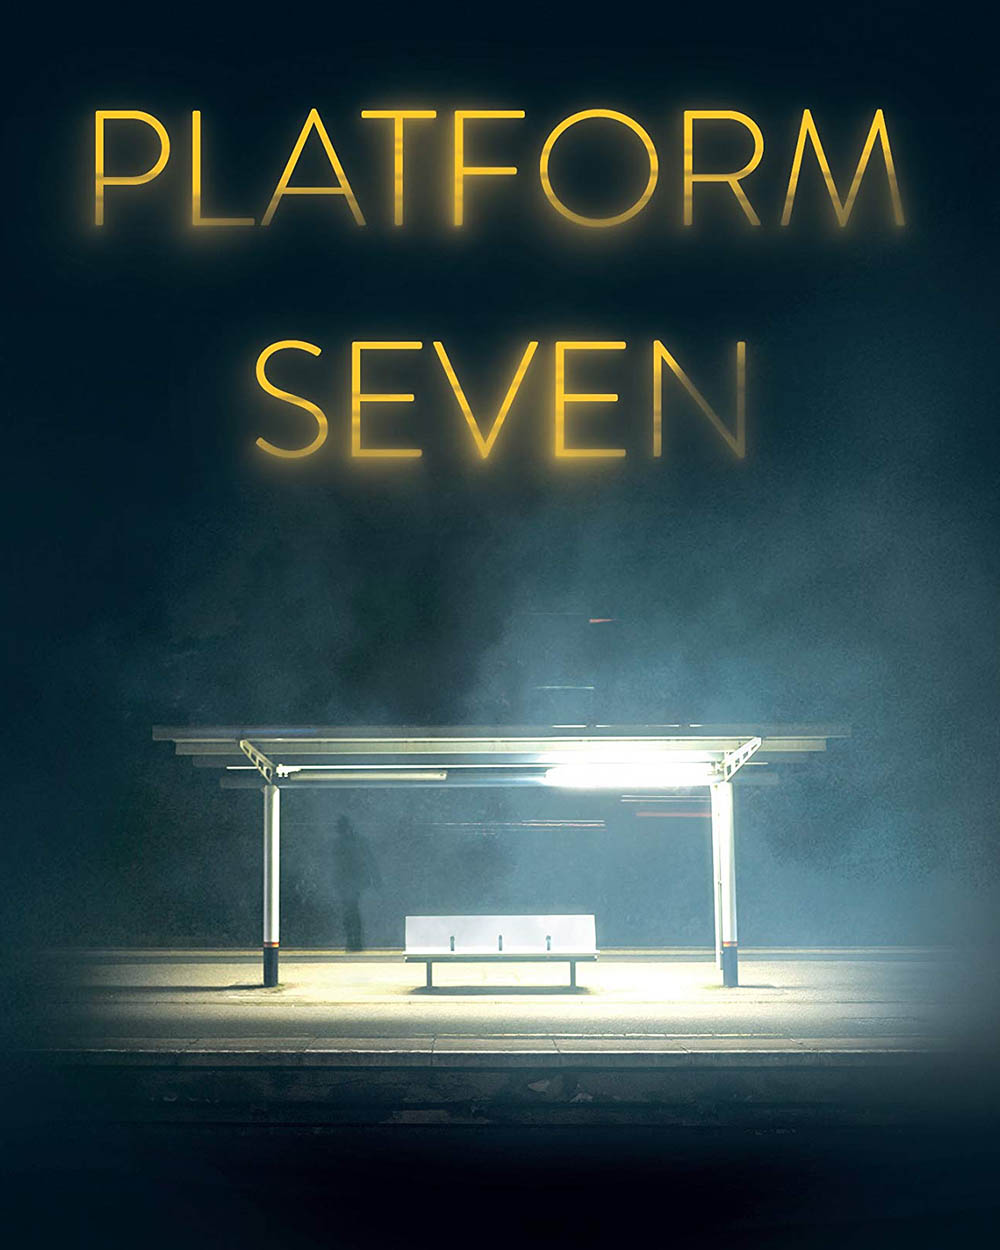 Platform 7